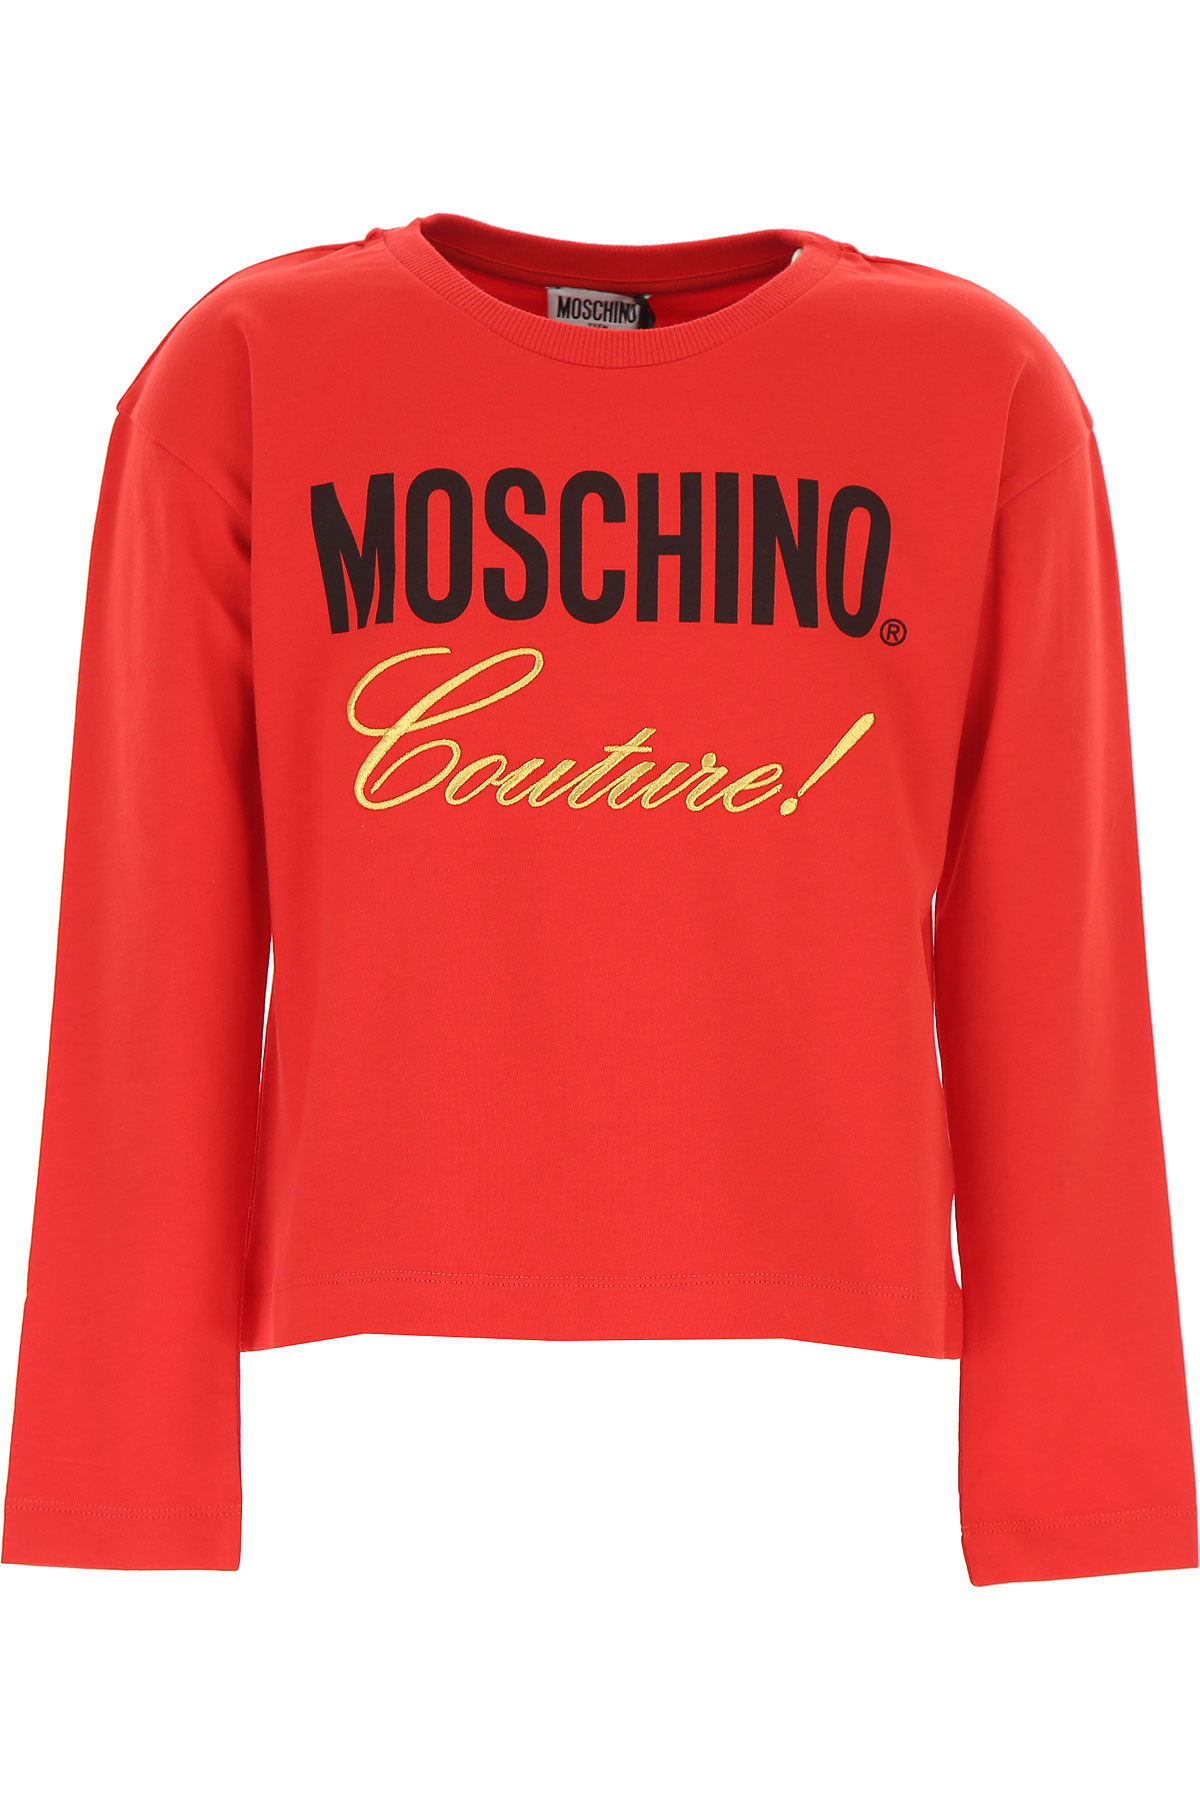 Moschino Kinder T-Shirt für Mädchen Günstig im Sale, Rot, Baumwolle, 2017, 10Y 12Y 14Y 8Y